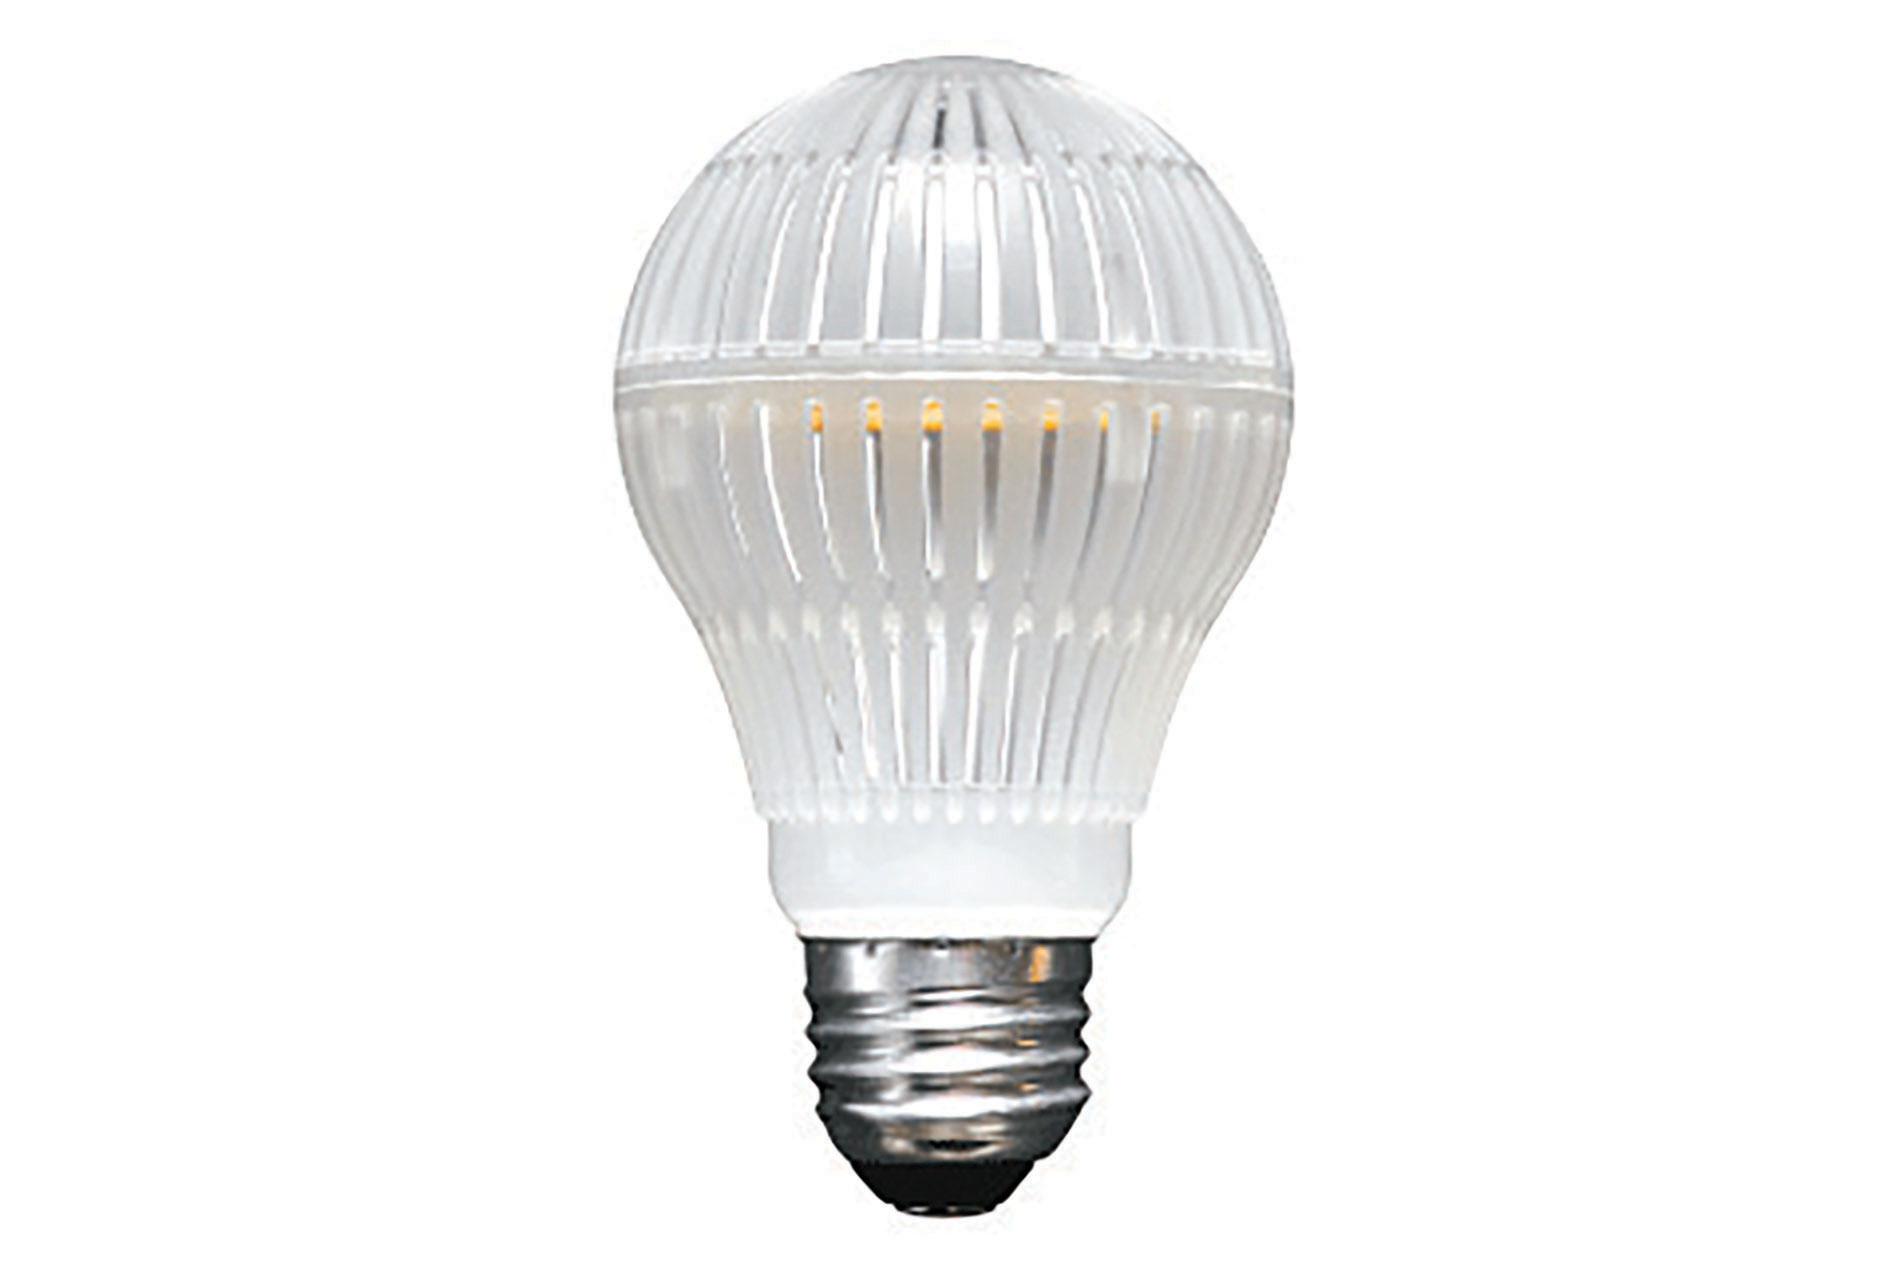 Global Value Lighting's Durabulb Lamp